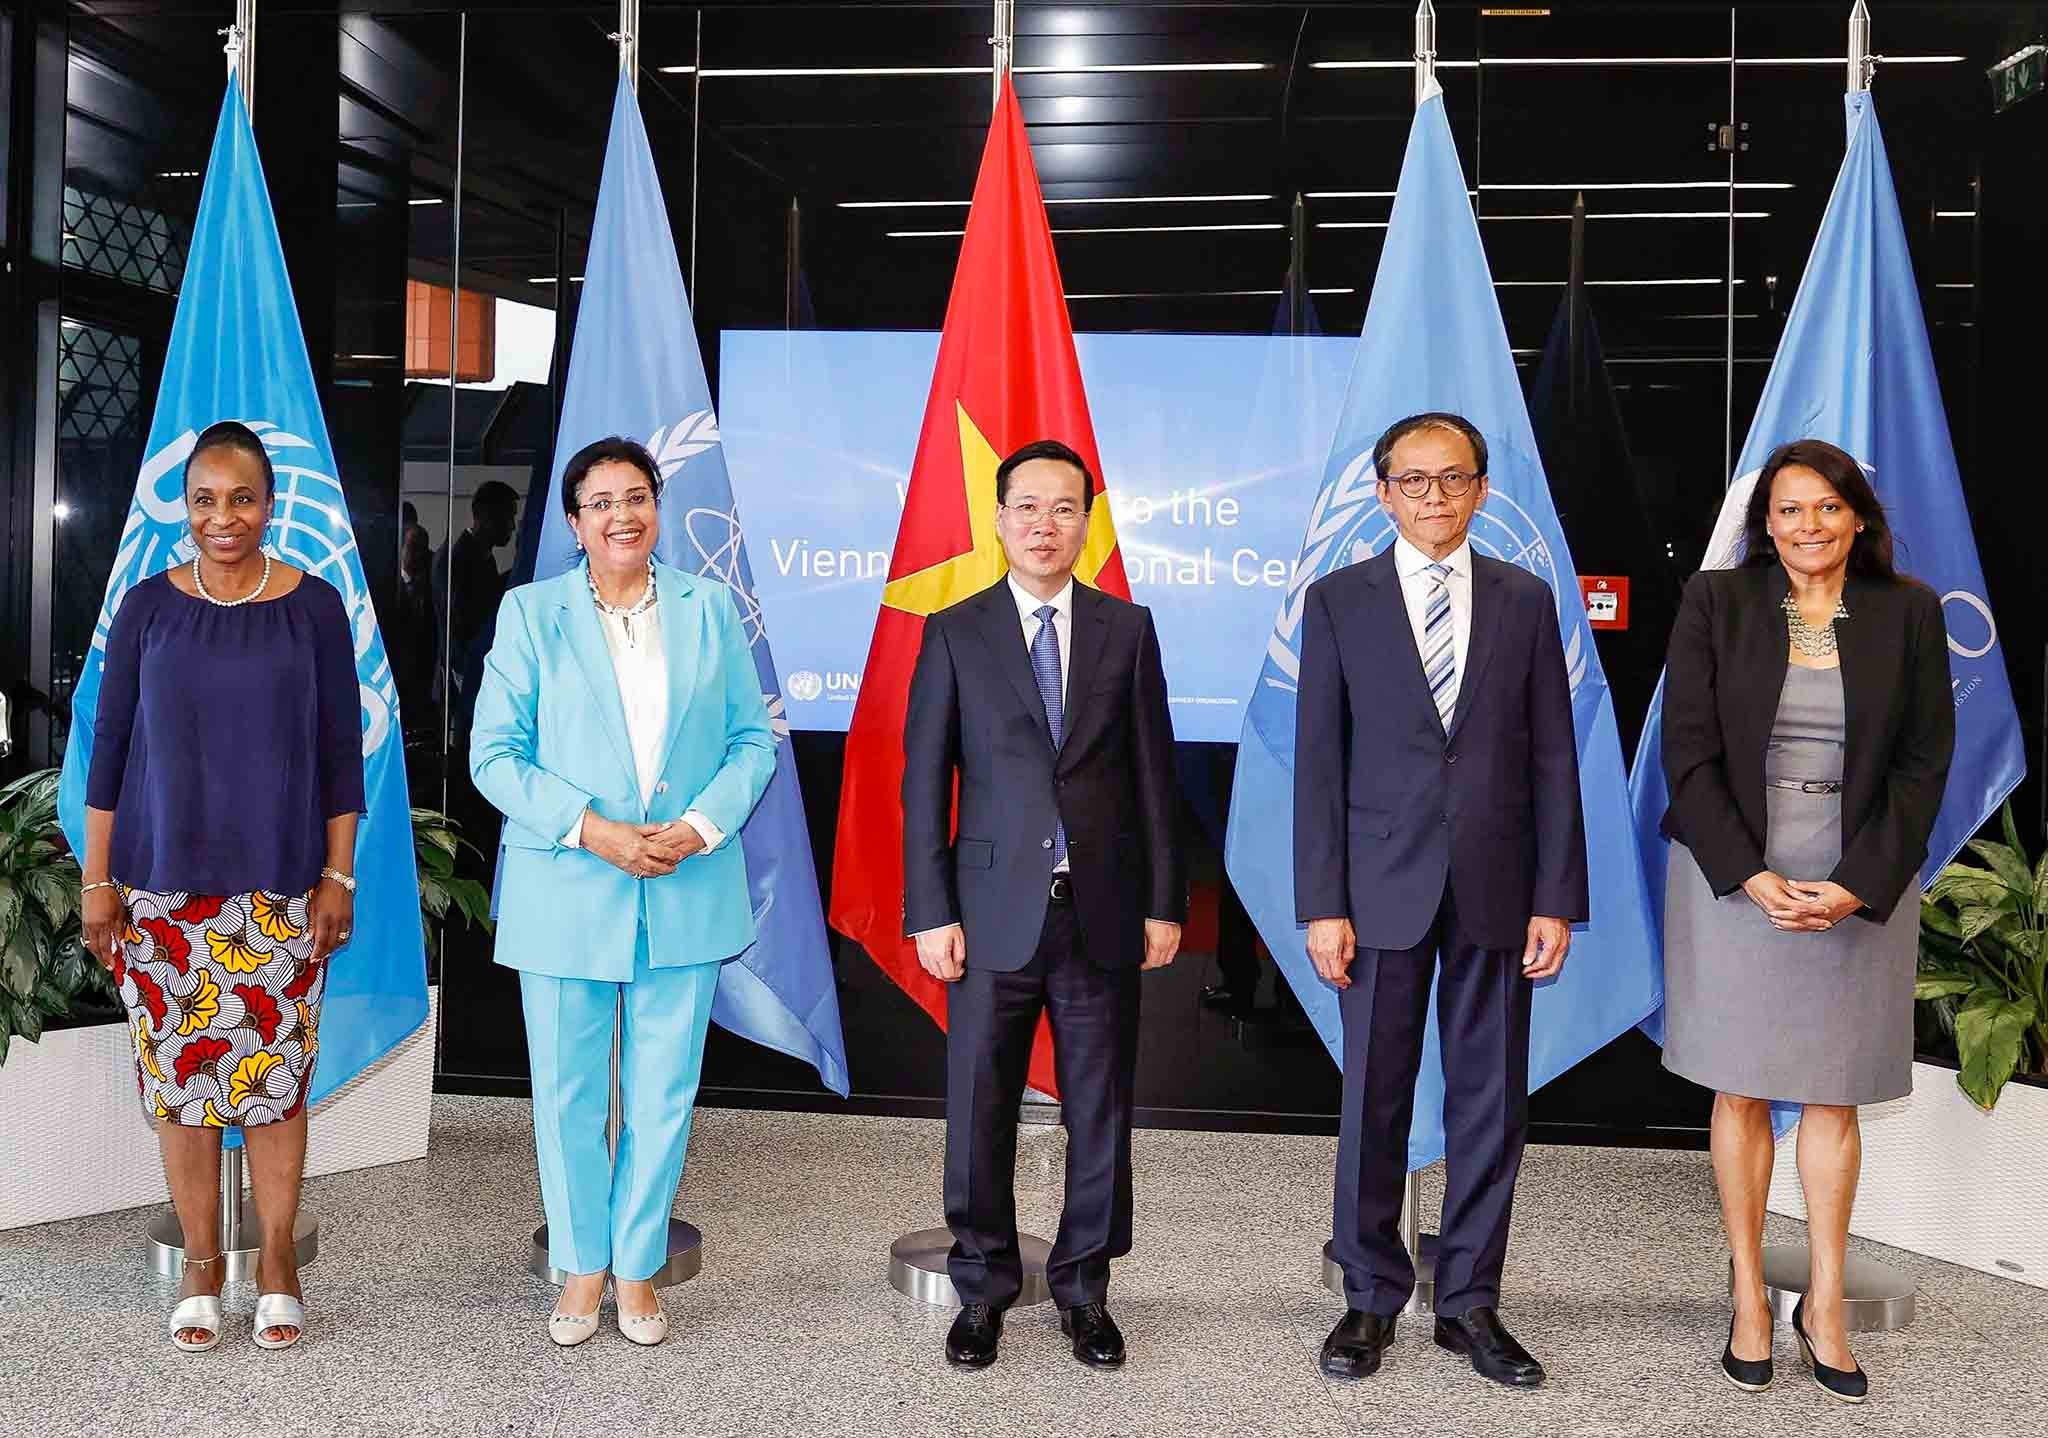 IAEA tiếp tục hợp tác nâng cao năng lực và chuyển giao công nghệ cho Việt Nam